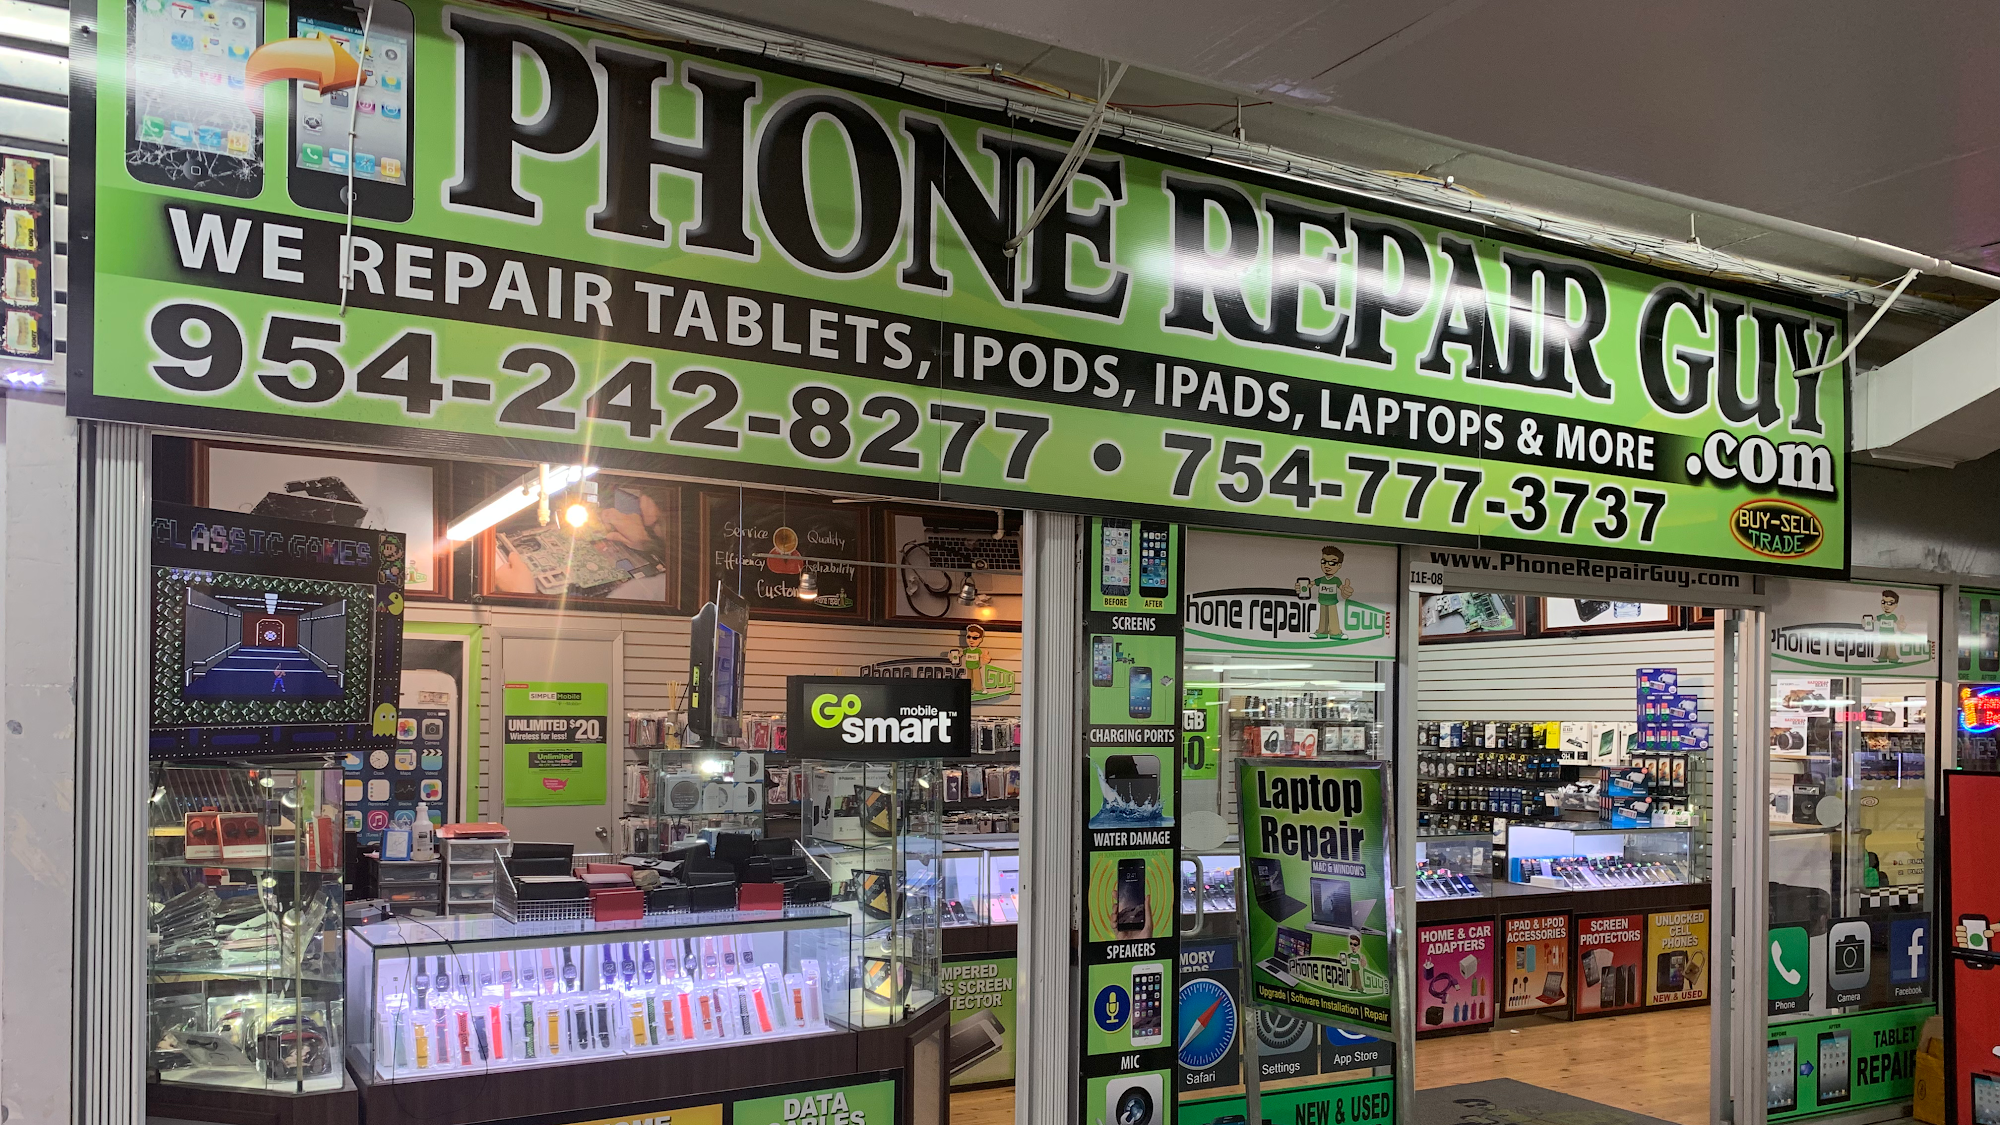 Phone Repair Guy